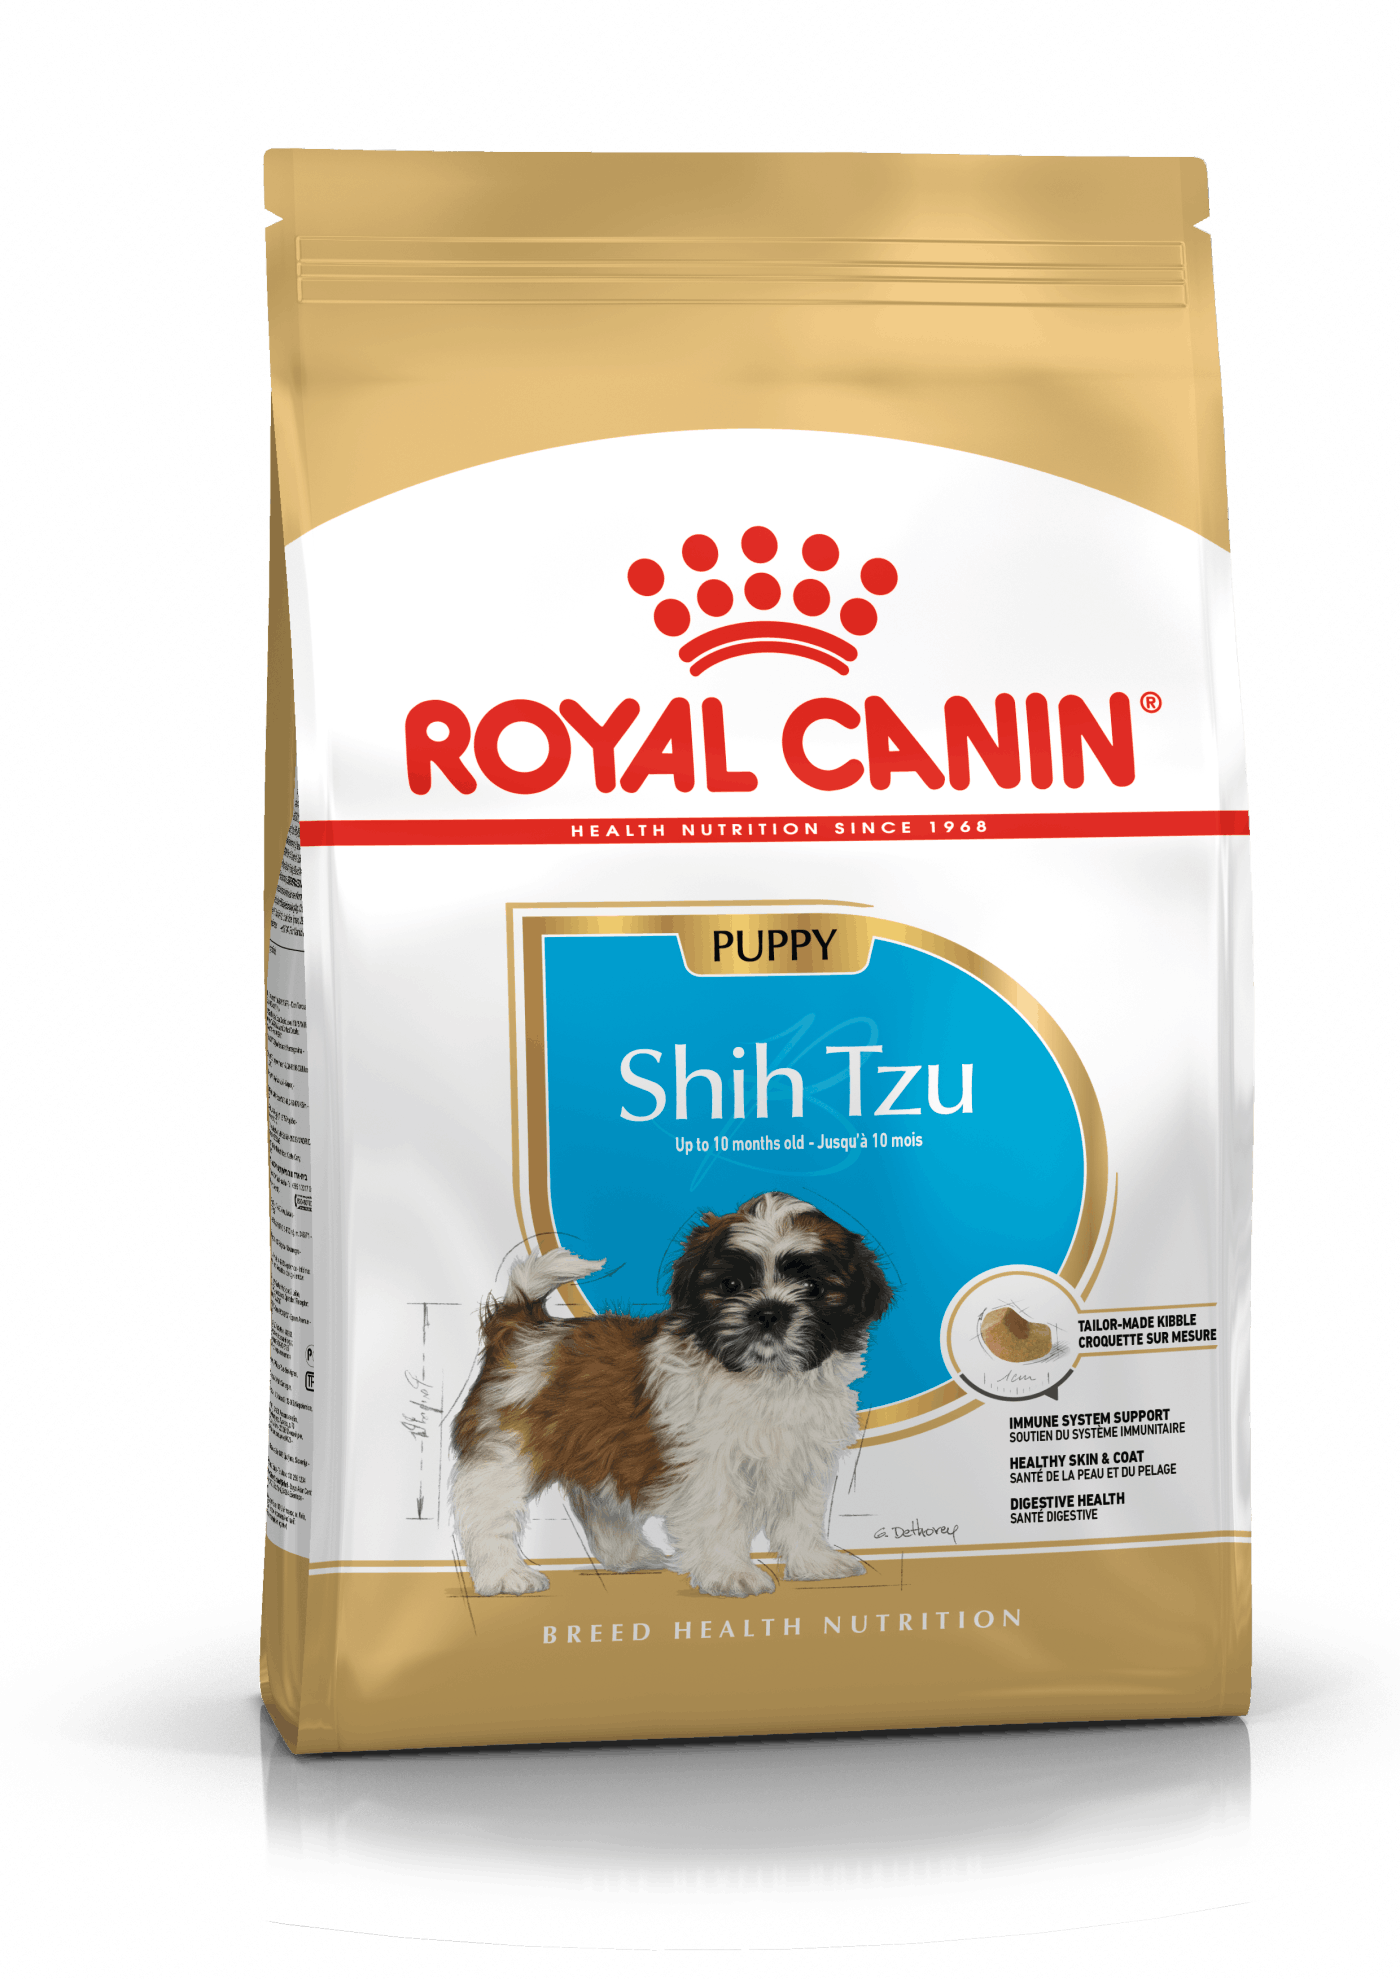 Royal Canin Shih Tzu Puppy - op til 10 måneder. (1,5kg)